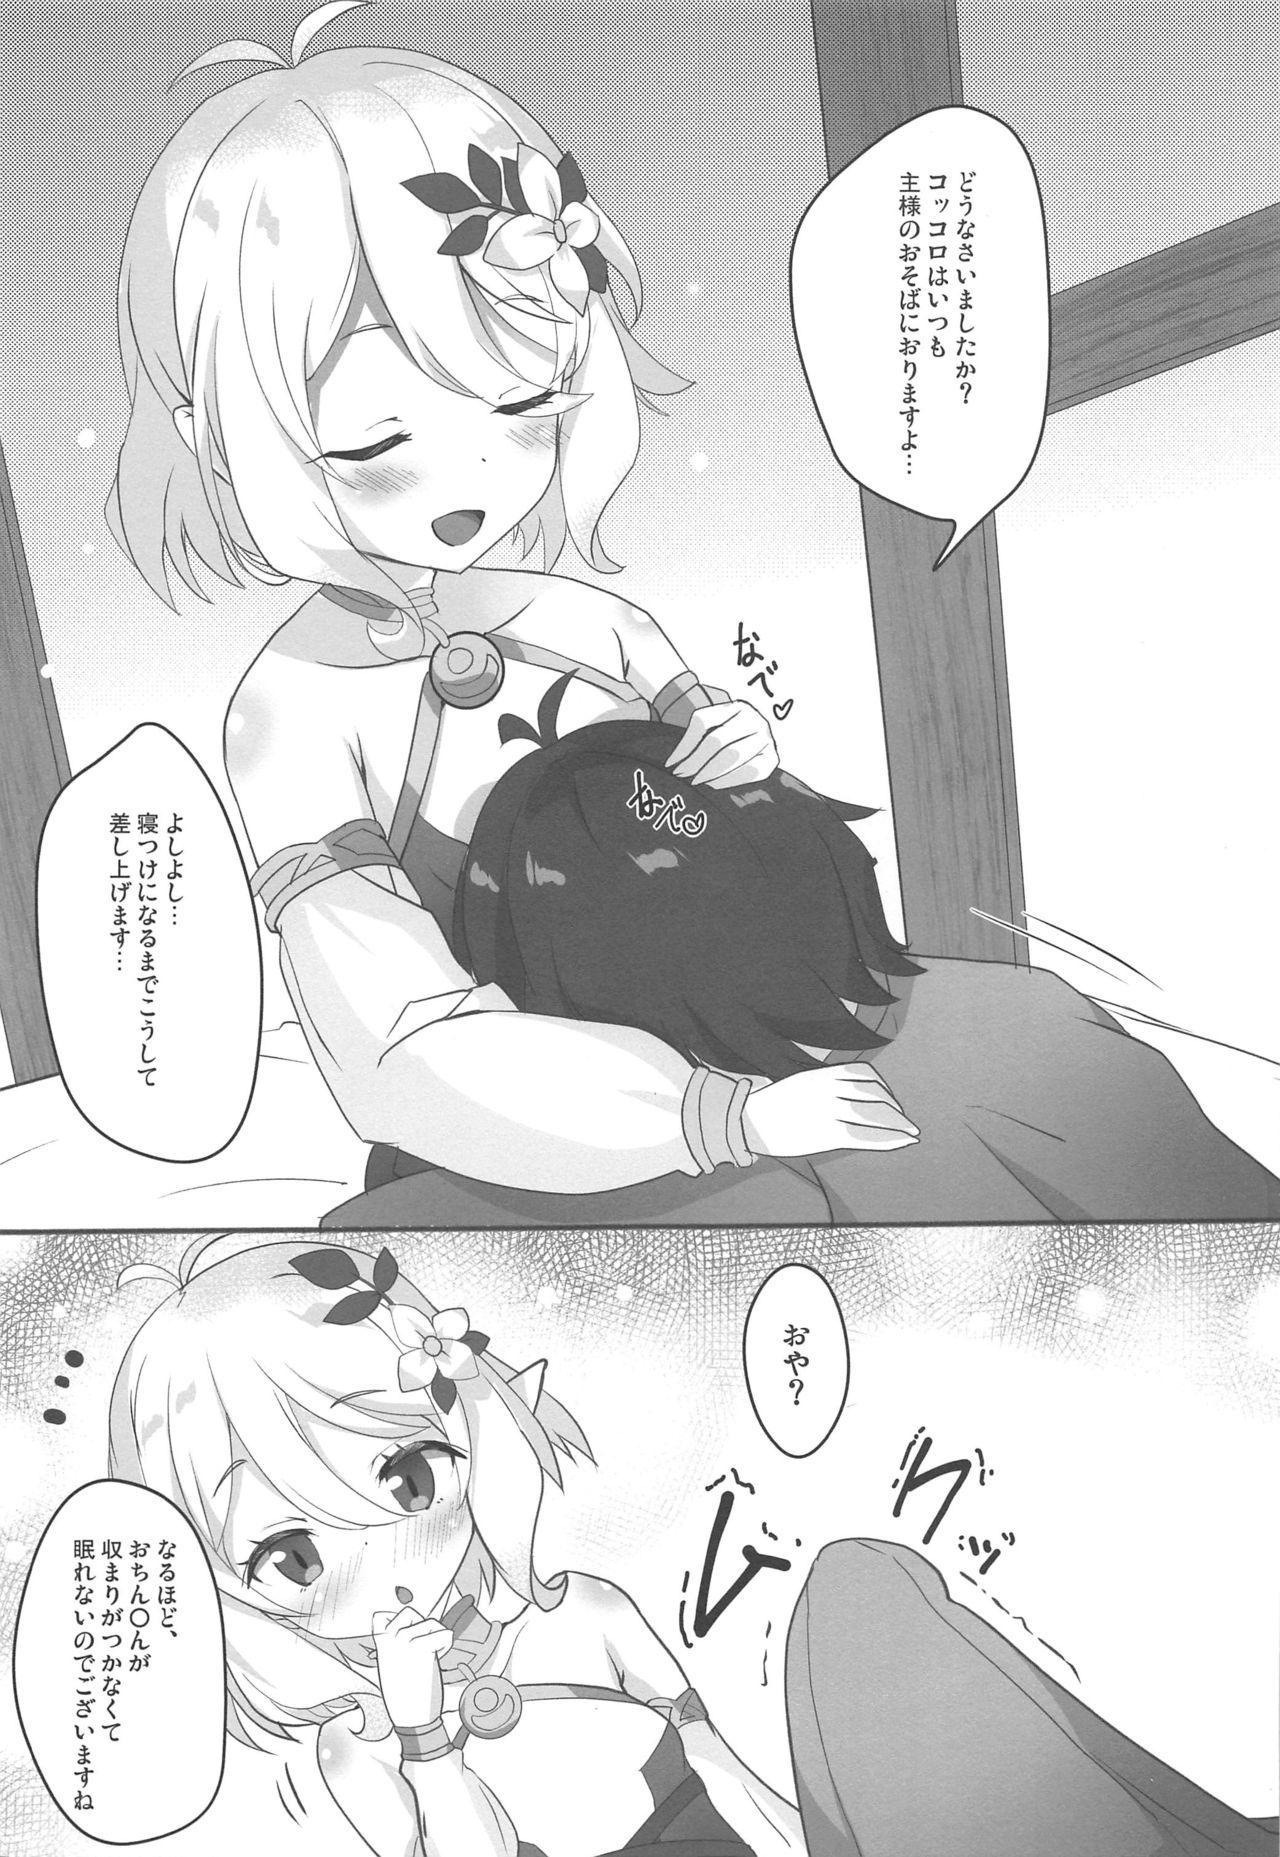 Gay Outdoors Kokkoro Mama no Shasei Kanri Re:Make - Princess connect Ass Lick - Page 2